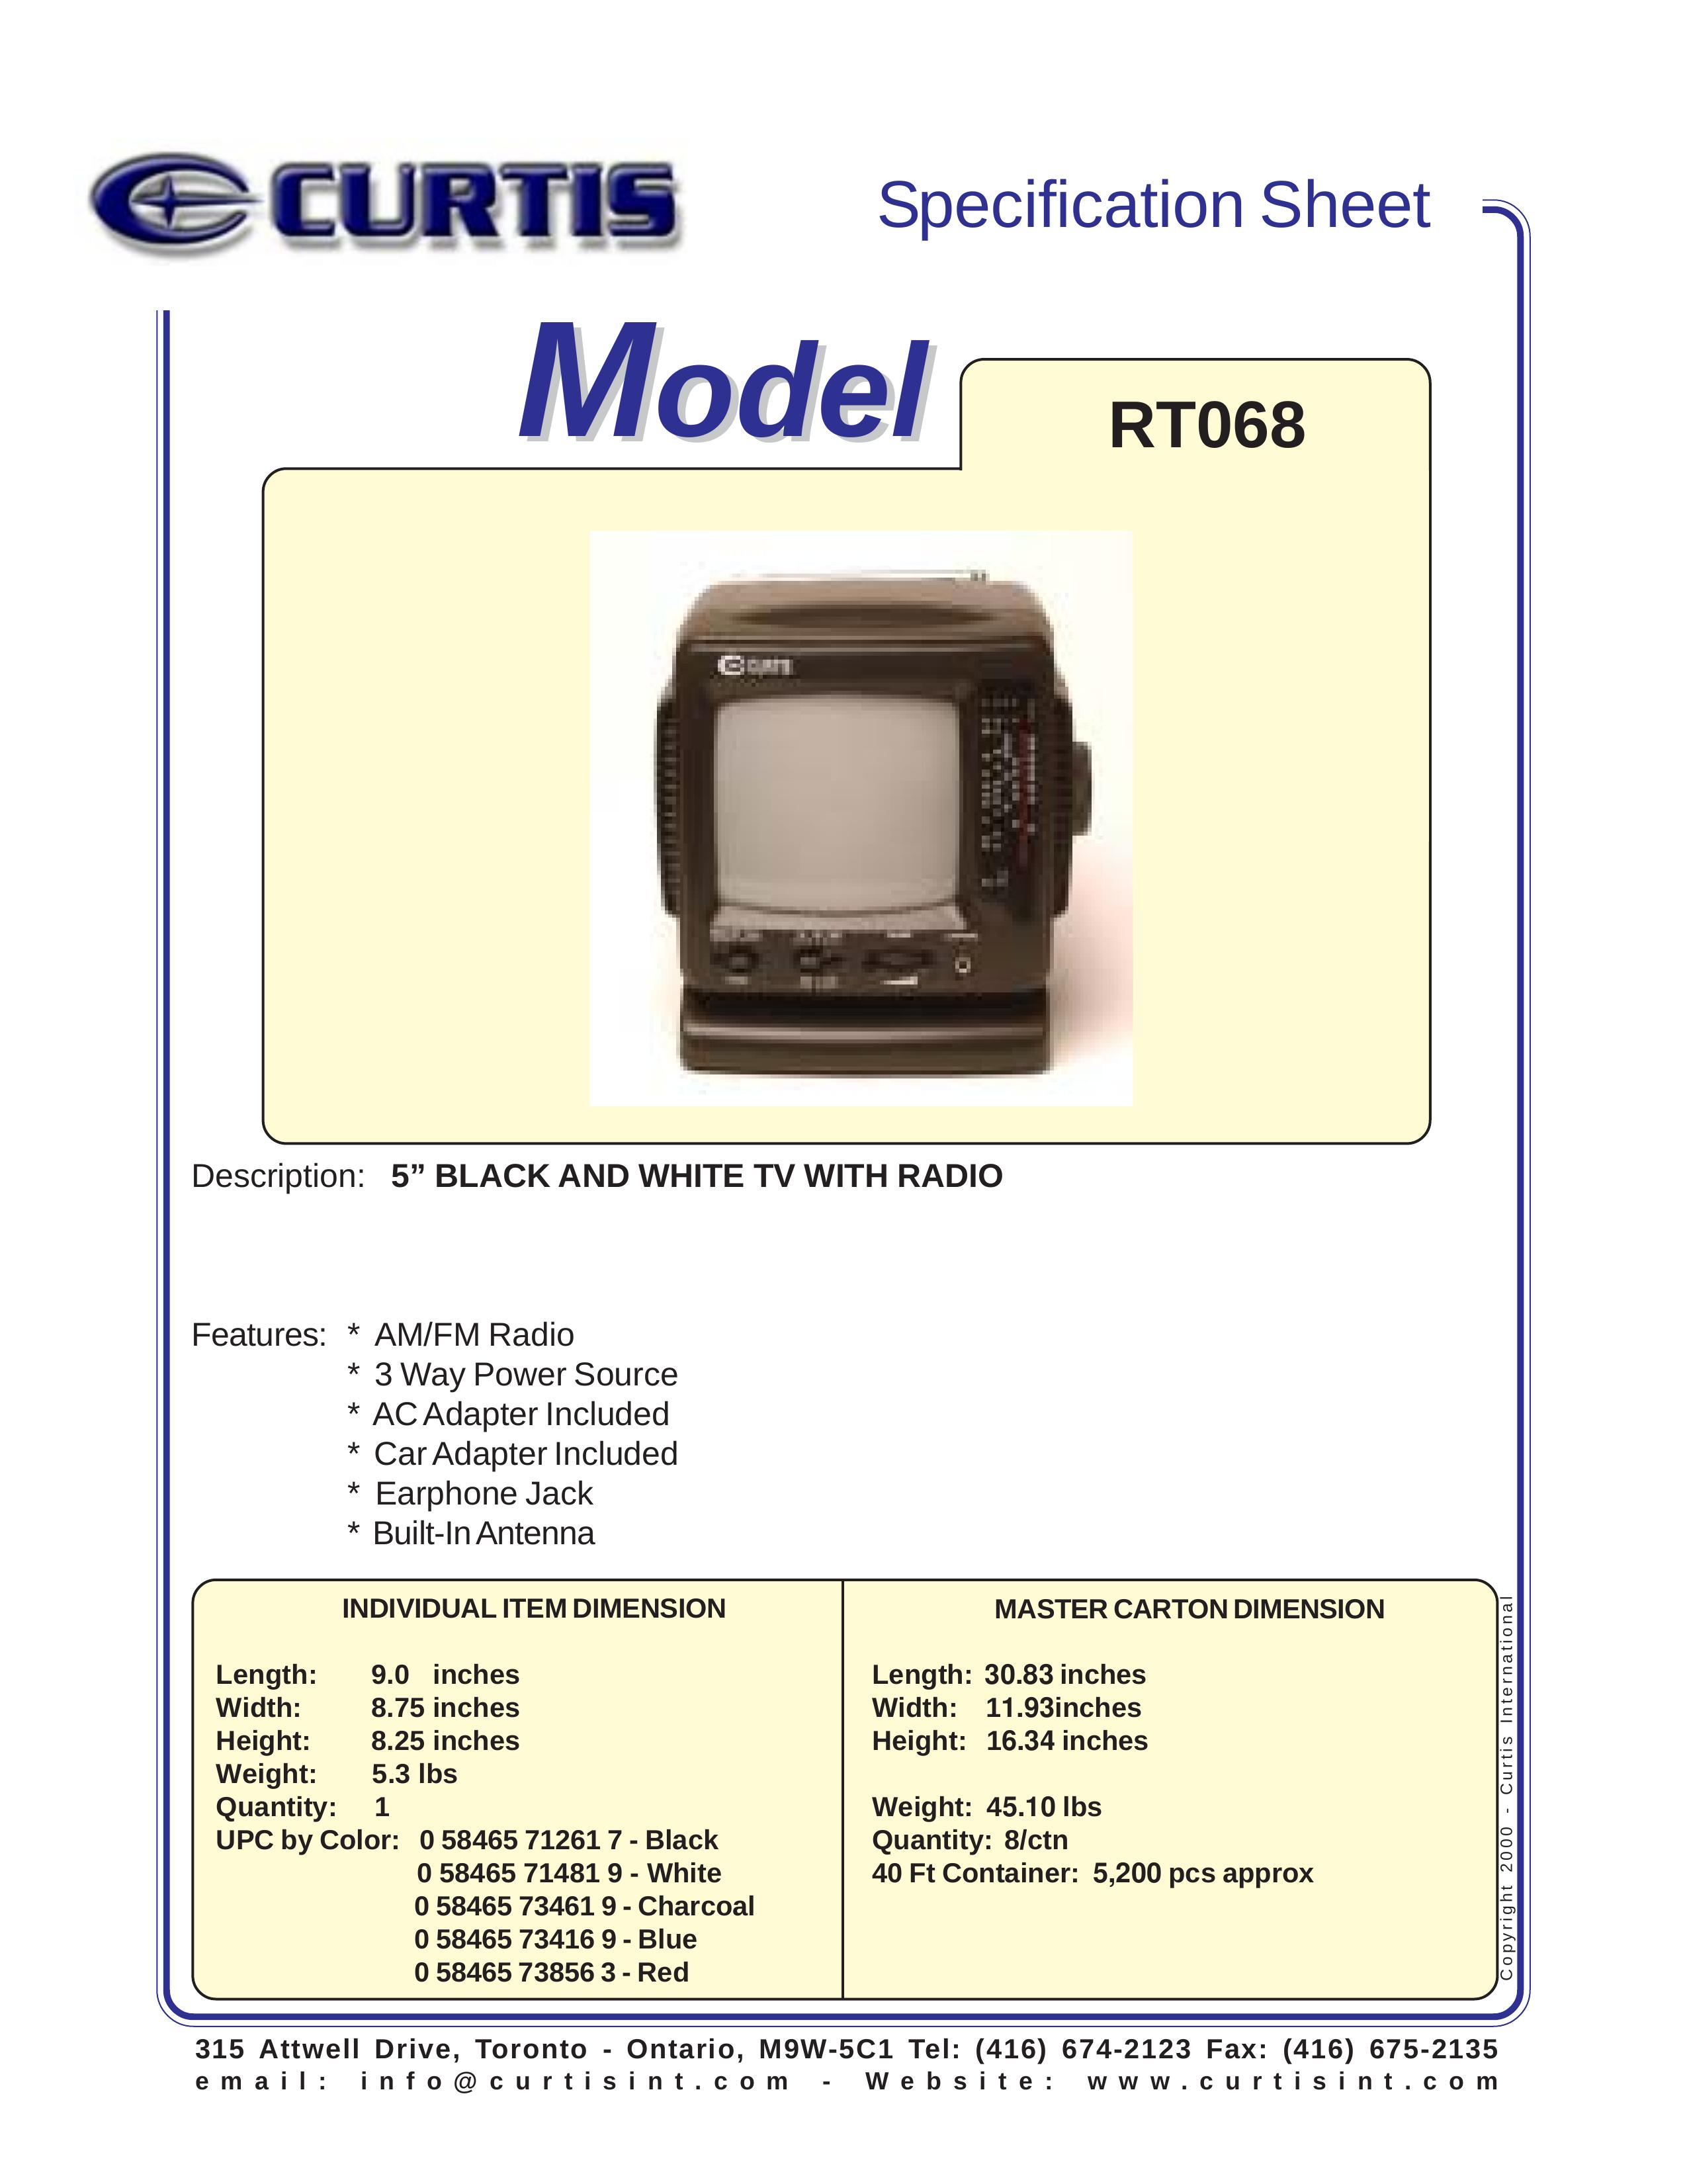 Curtis RT068 Handheld TV User Manual